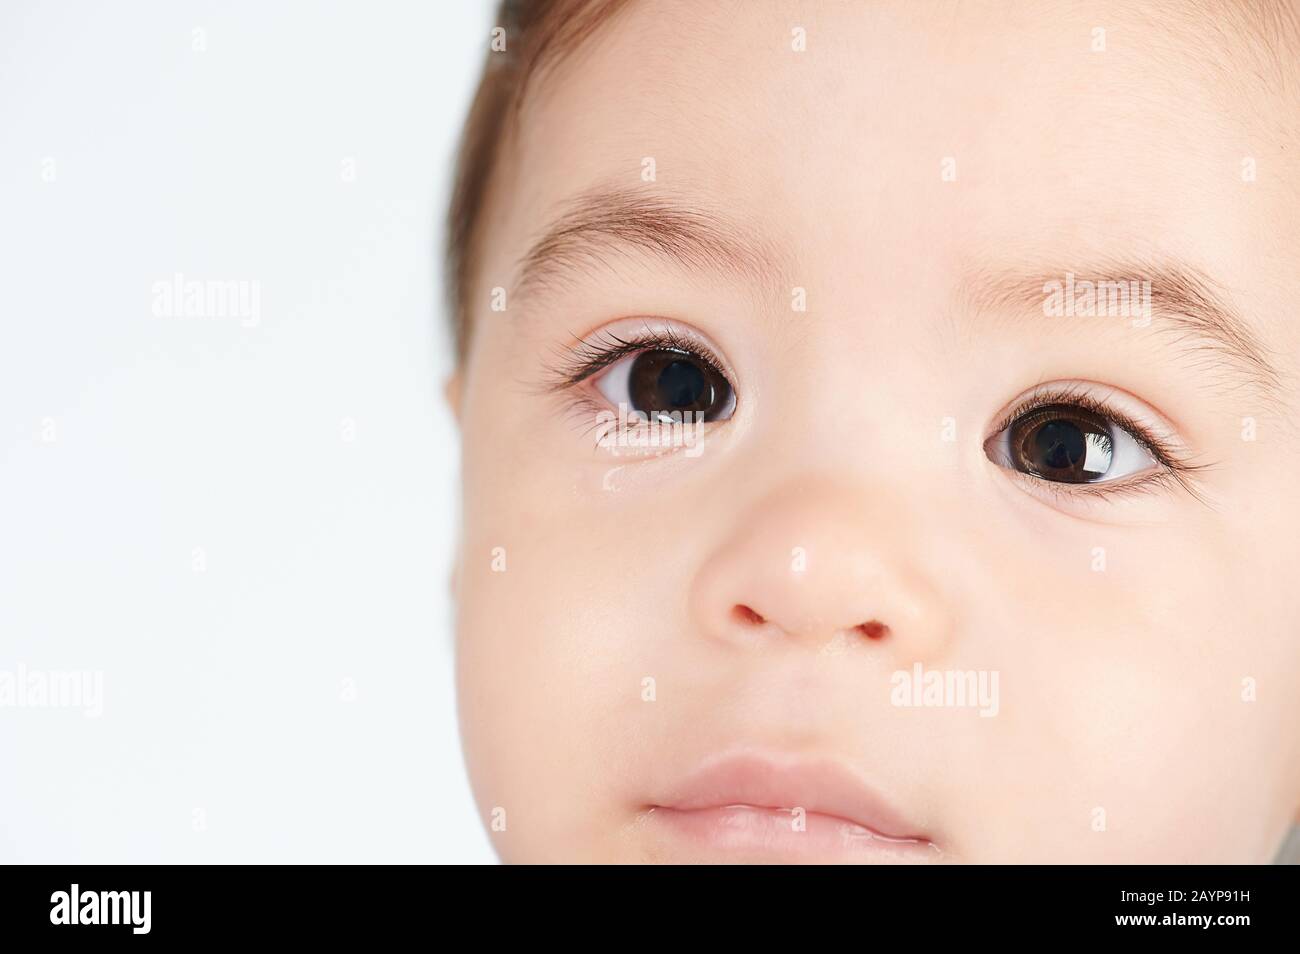 Bambina con occhi bagnati vista ravvicinata isolata su sfondo bianco Foto Stock